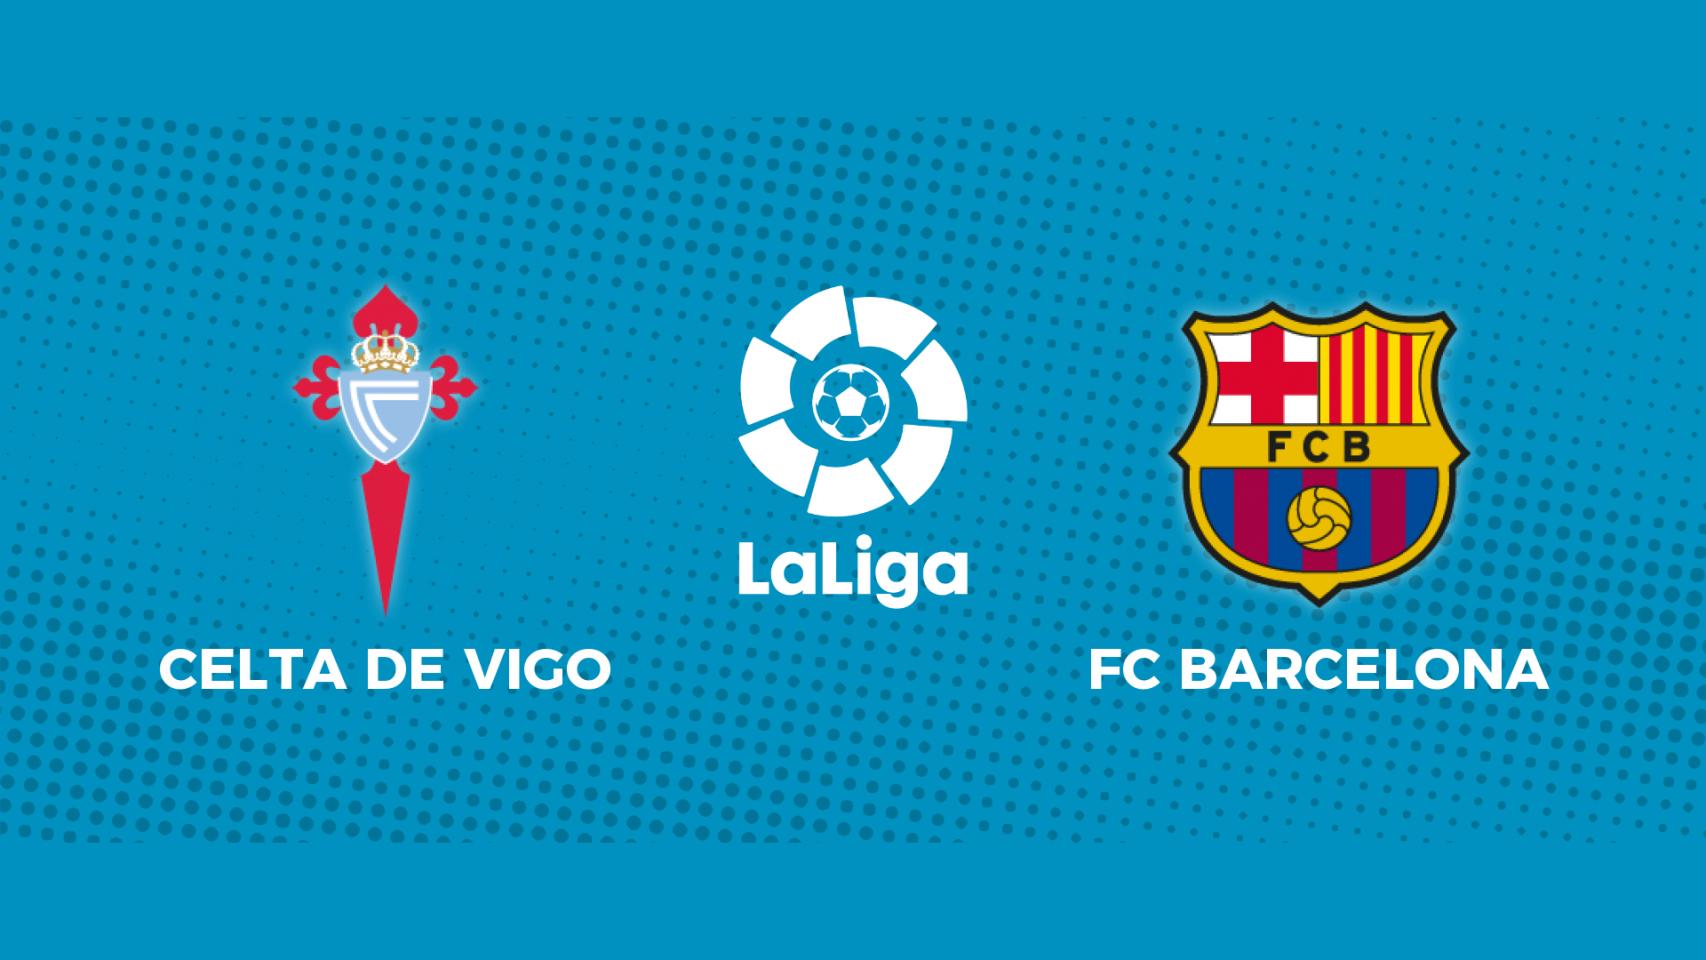 Celta de Vigo - FC Barcelona: siga en directo el partido de La Liga